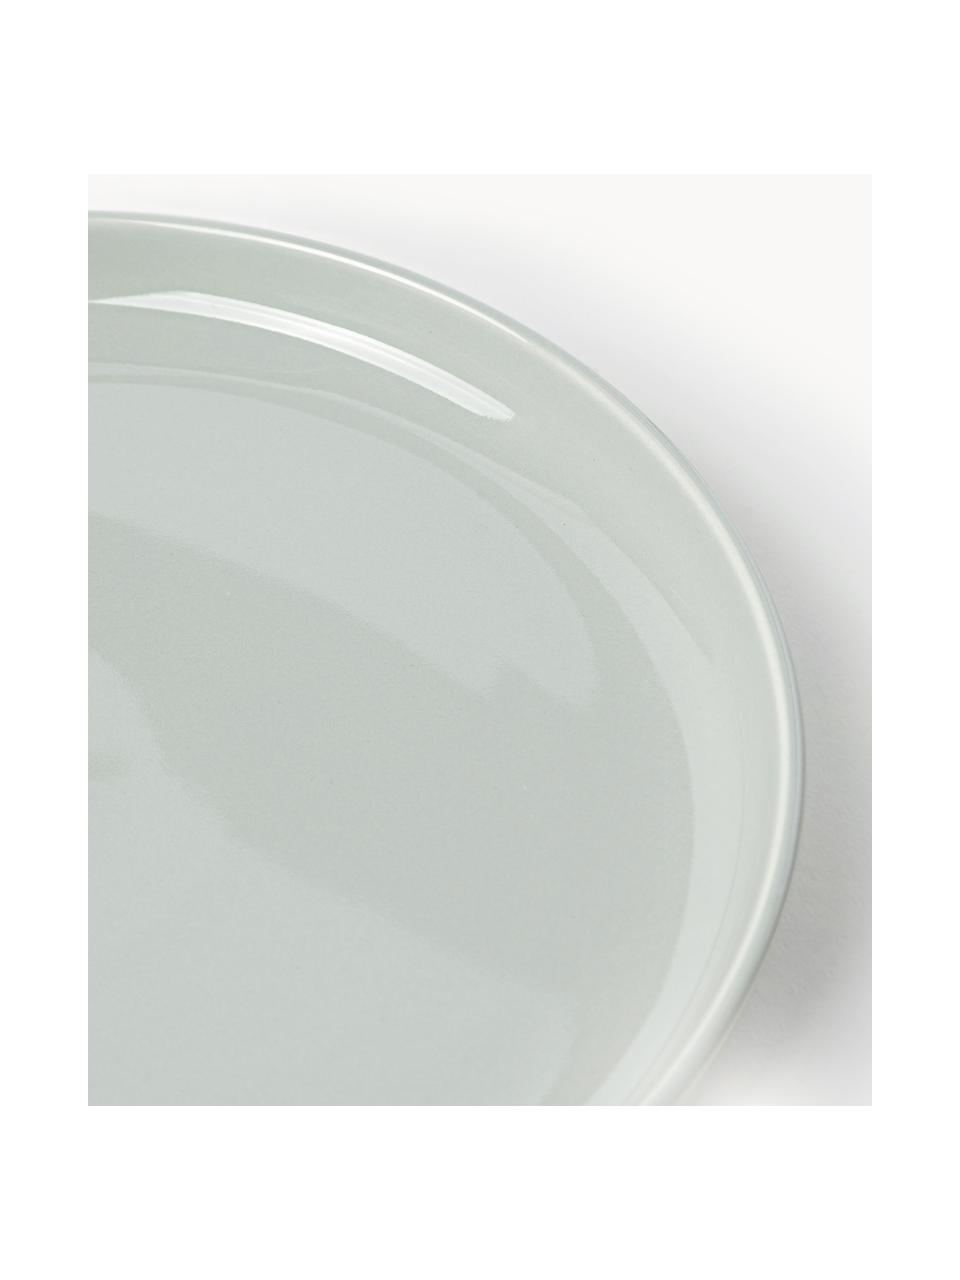 Porzellan-Frühstückteller Nessa, 4 Stück, Hochwertiges Hartporzellan, glasiert, Hellgrau, glänzend, Ø 19 cm